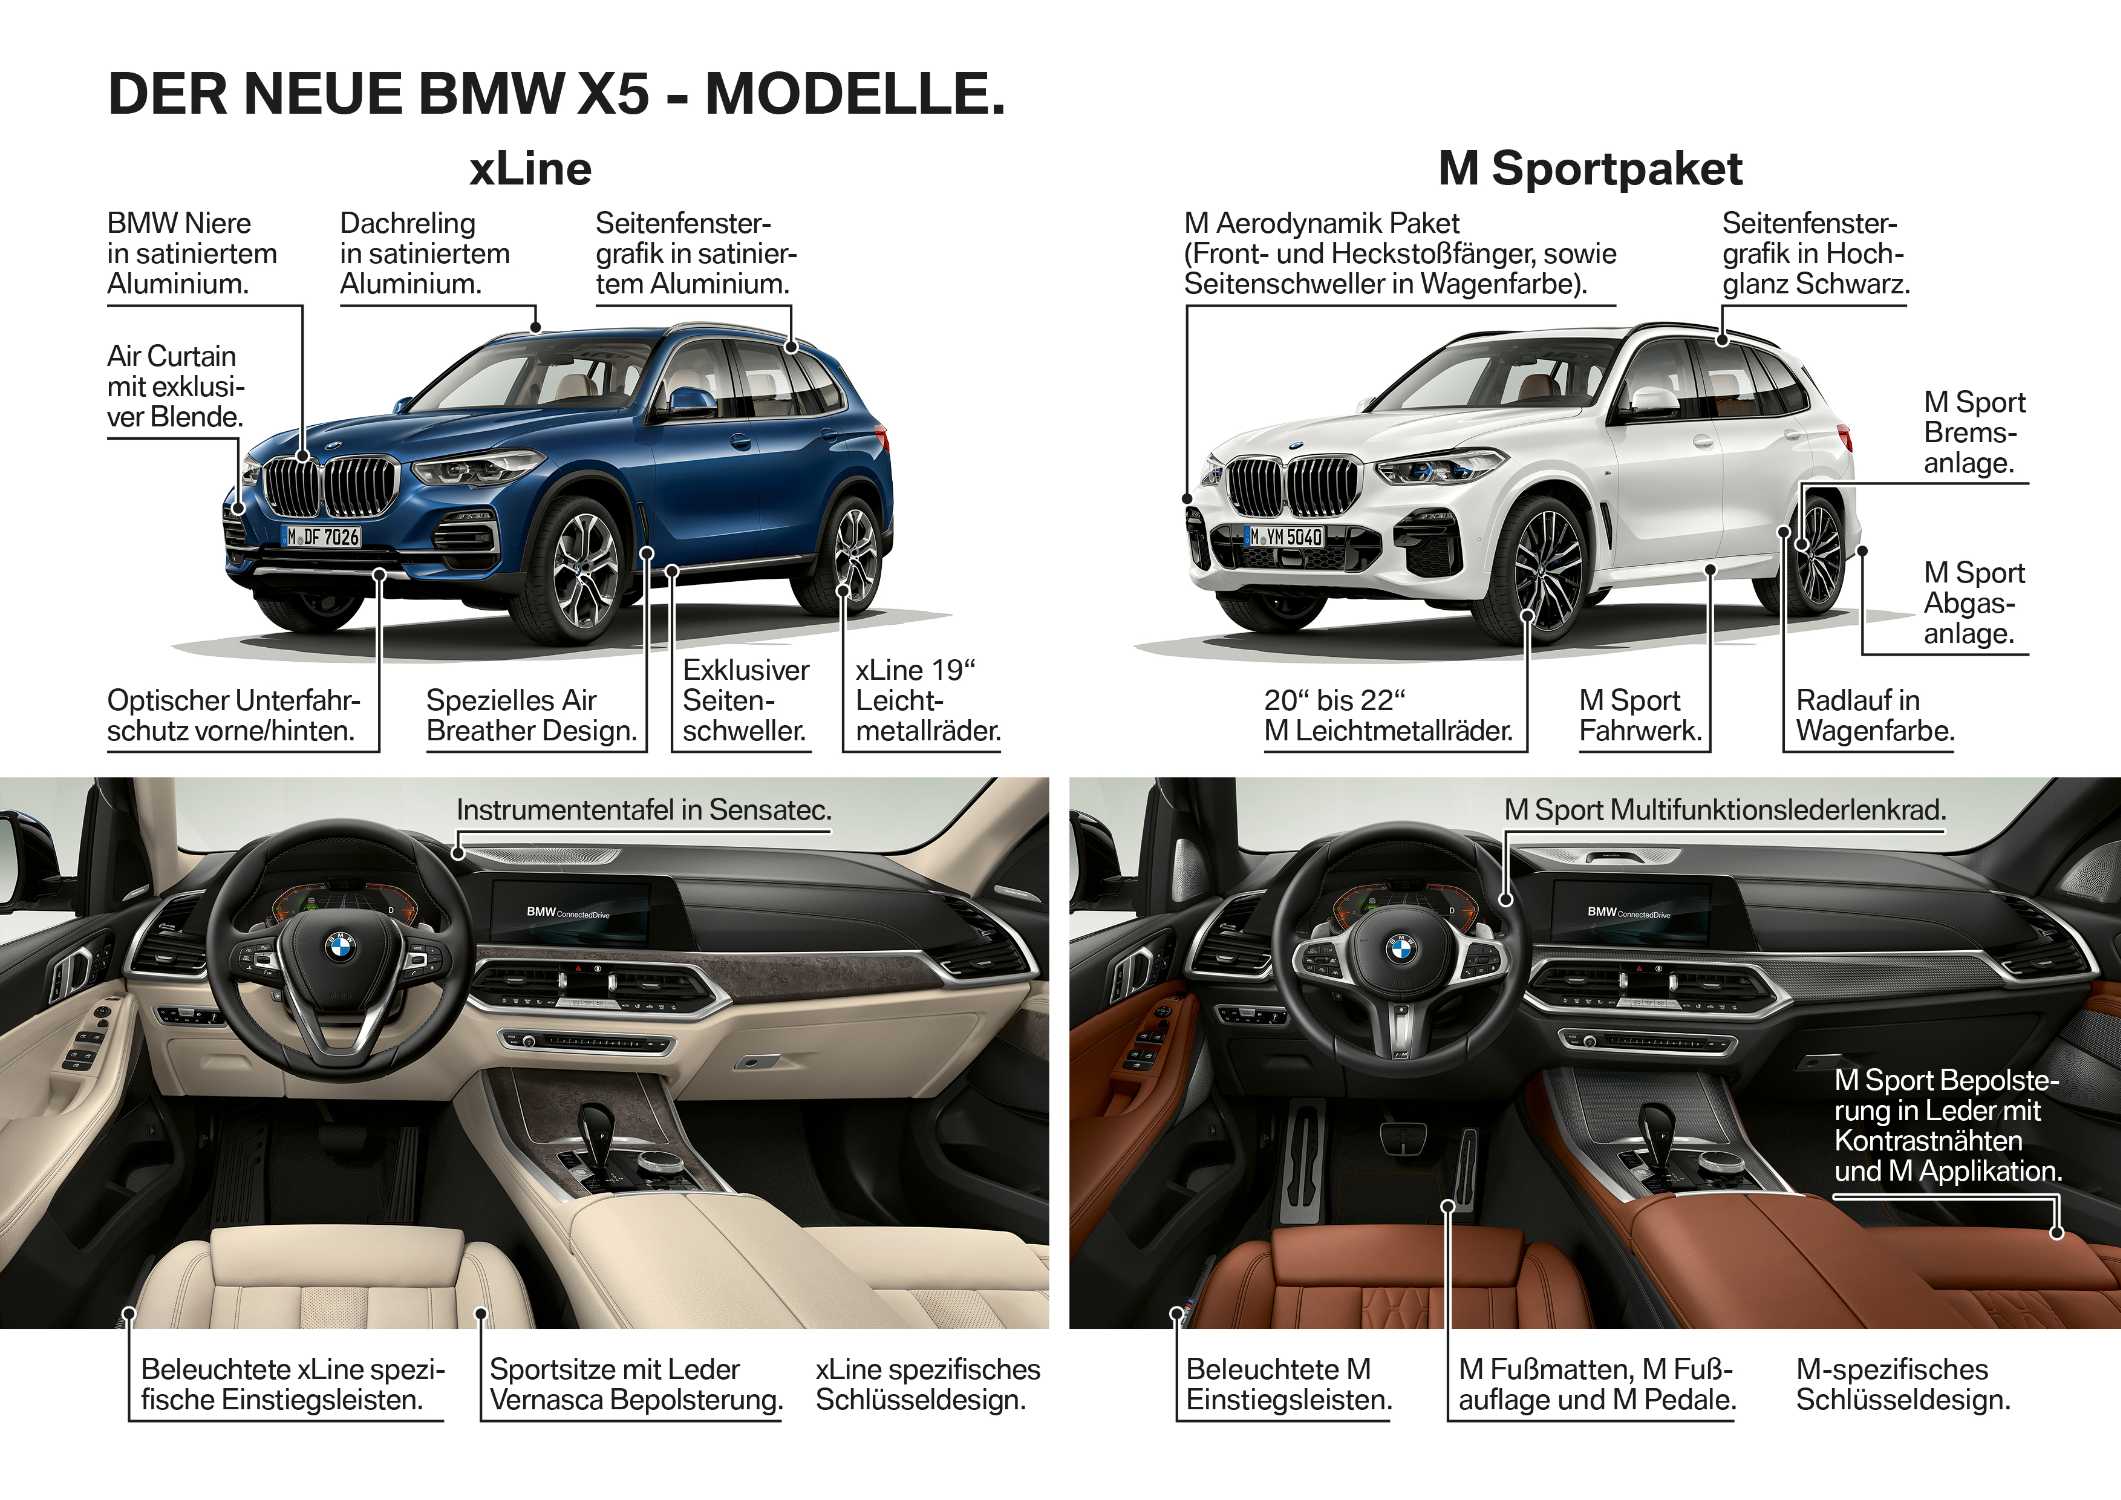 Der neue BMW X5: Das Prestige SAV mit den innovativsten Technologien.